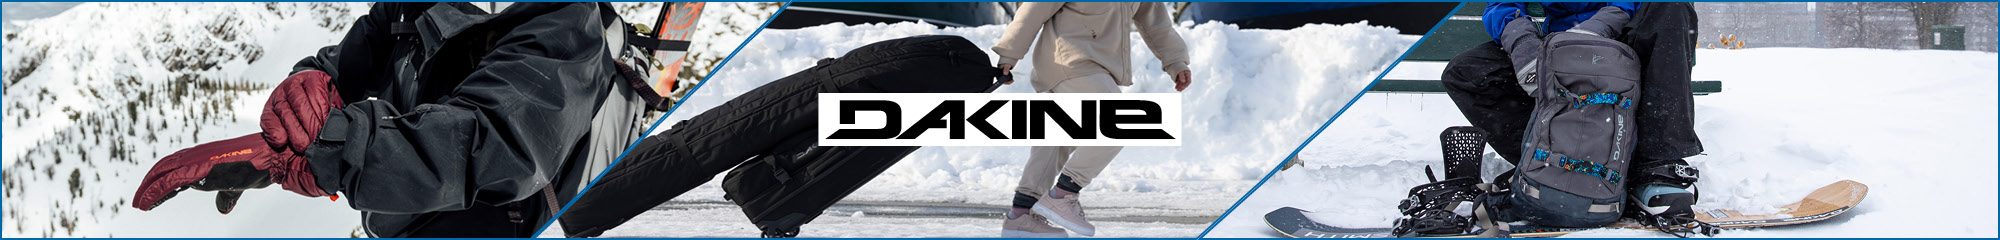 Dakine Snow Gear and - & Ski Sports